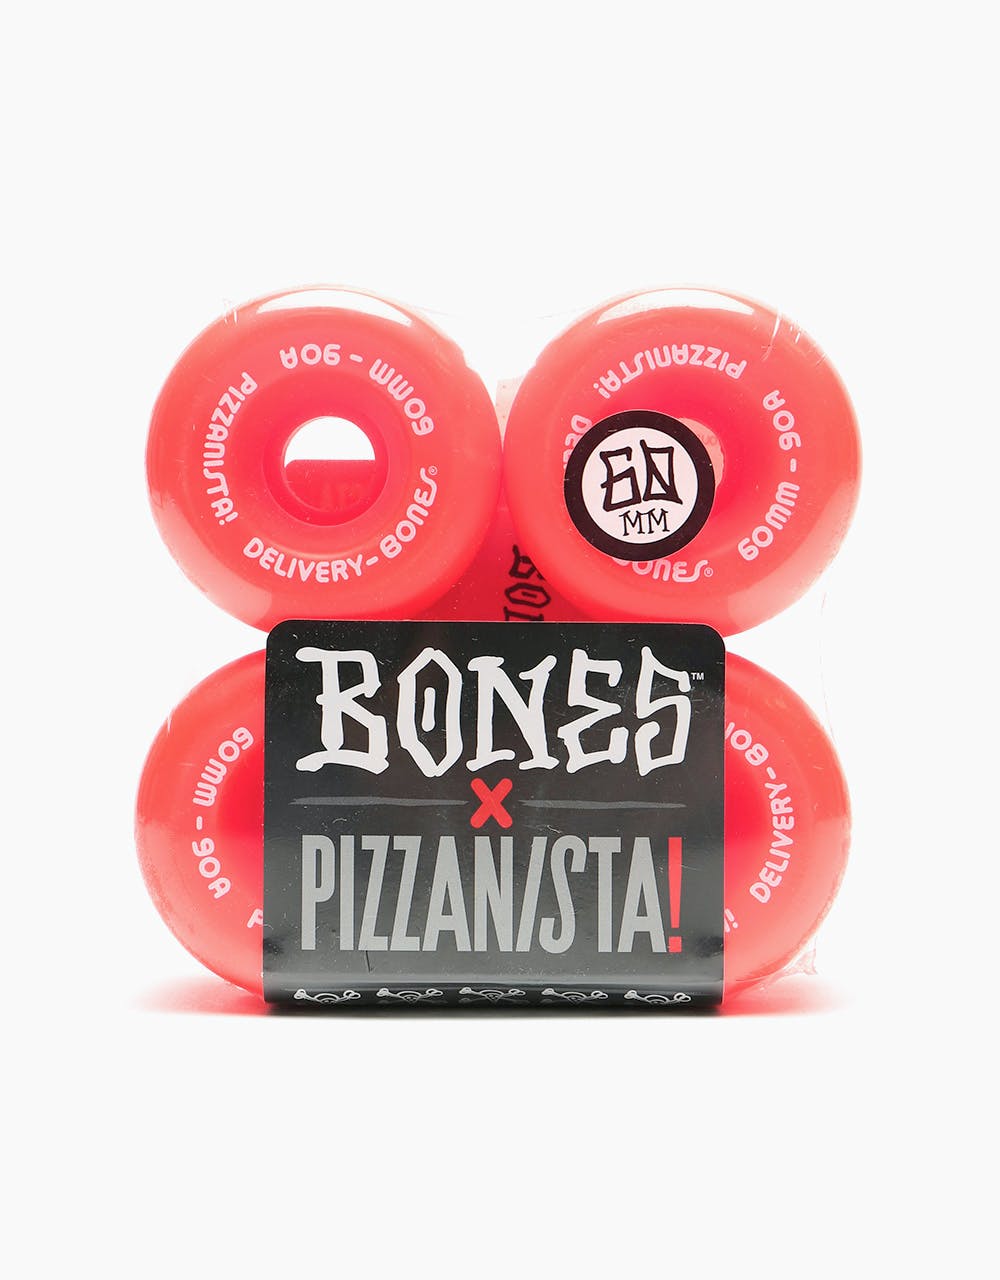 Bones OG Formula Pizzanista Delivery Skateboard Wheel - 60mm